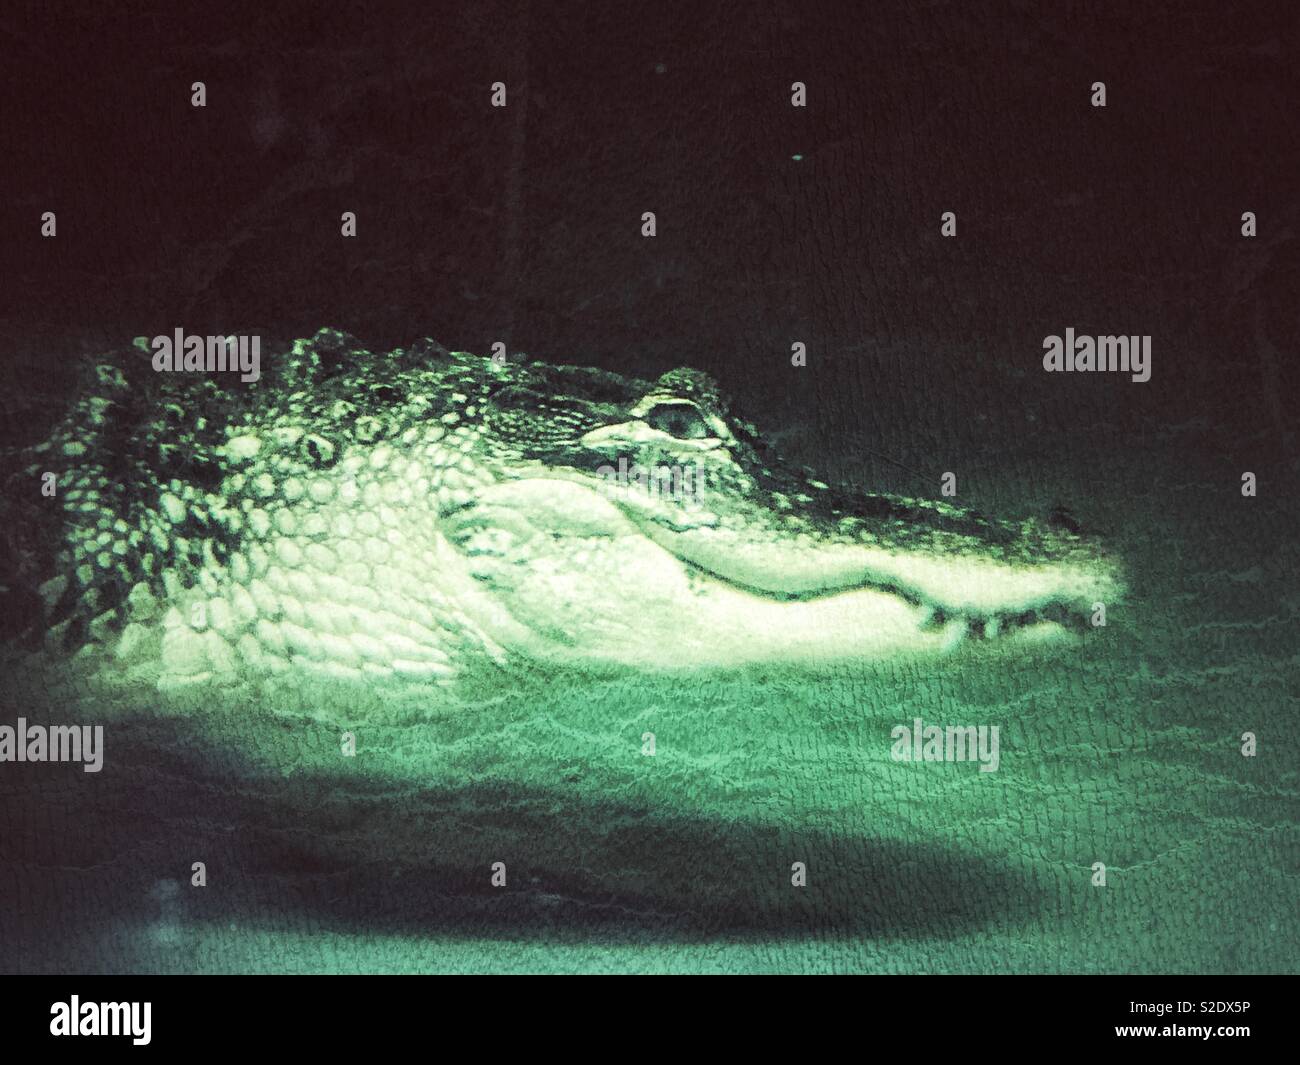 Kreative Seite anzeigen Portrait von Krokodil Kopf Schwimmen unter Wasser suchen an Kamera Stockfoto